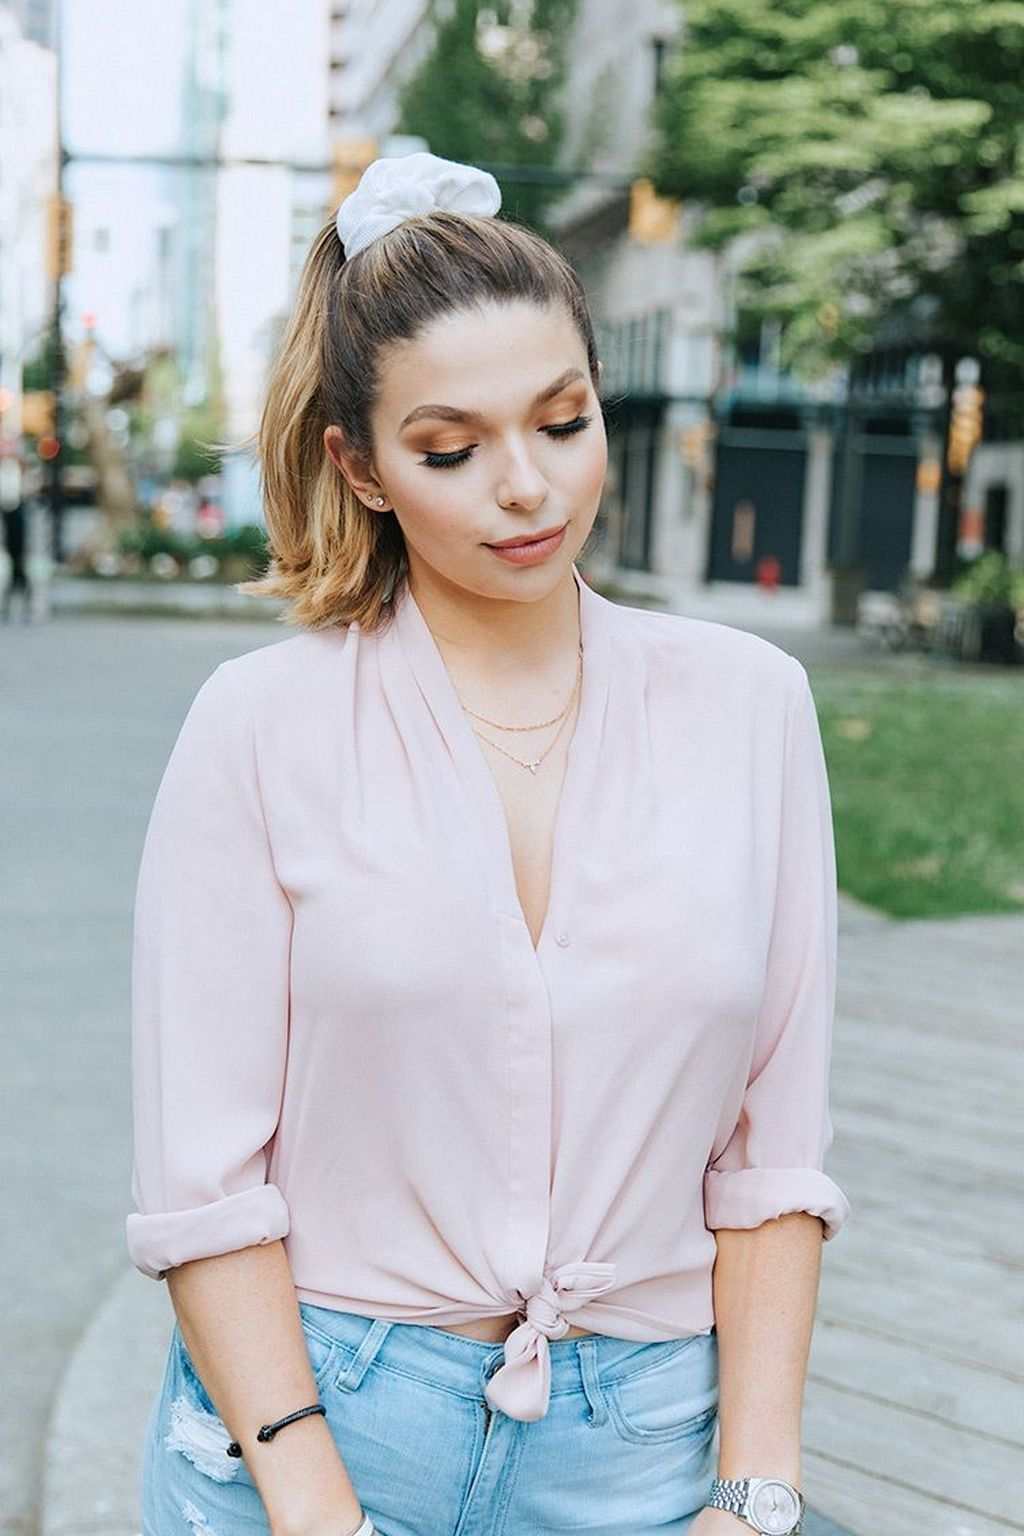 Hårtilbehør scrunchie hvid mode trend pink skjorte bluse hår stil ideer